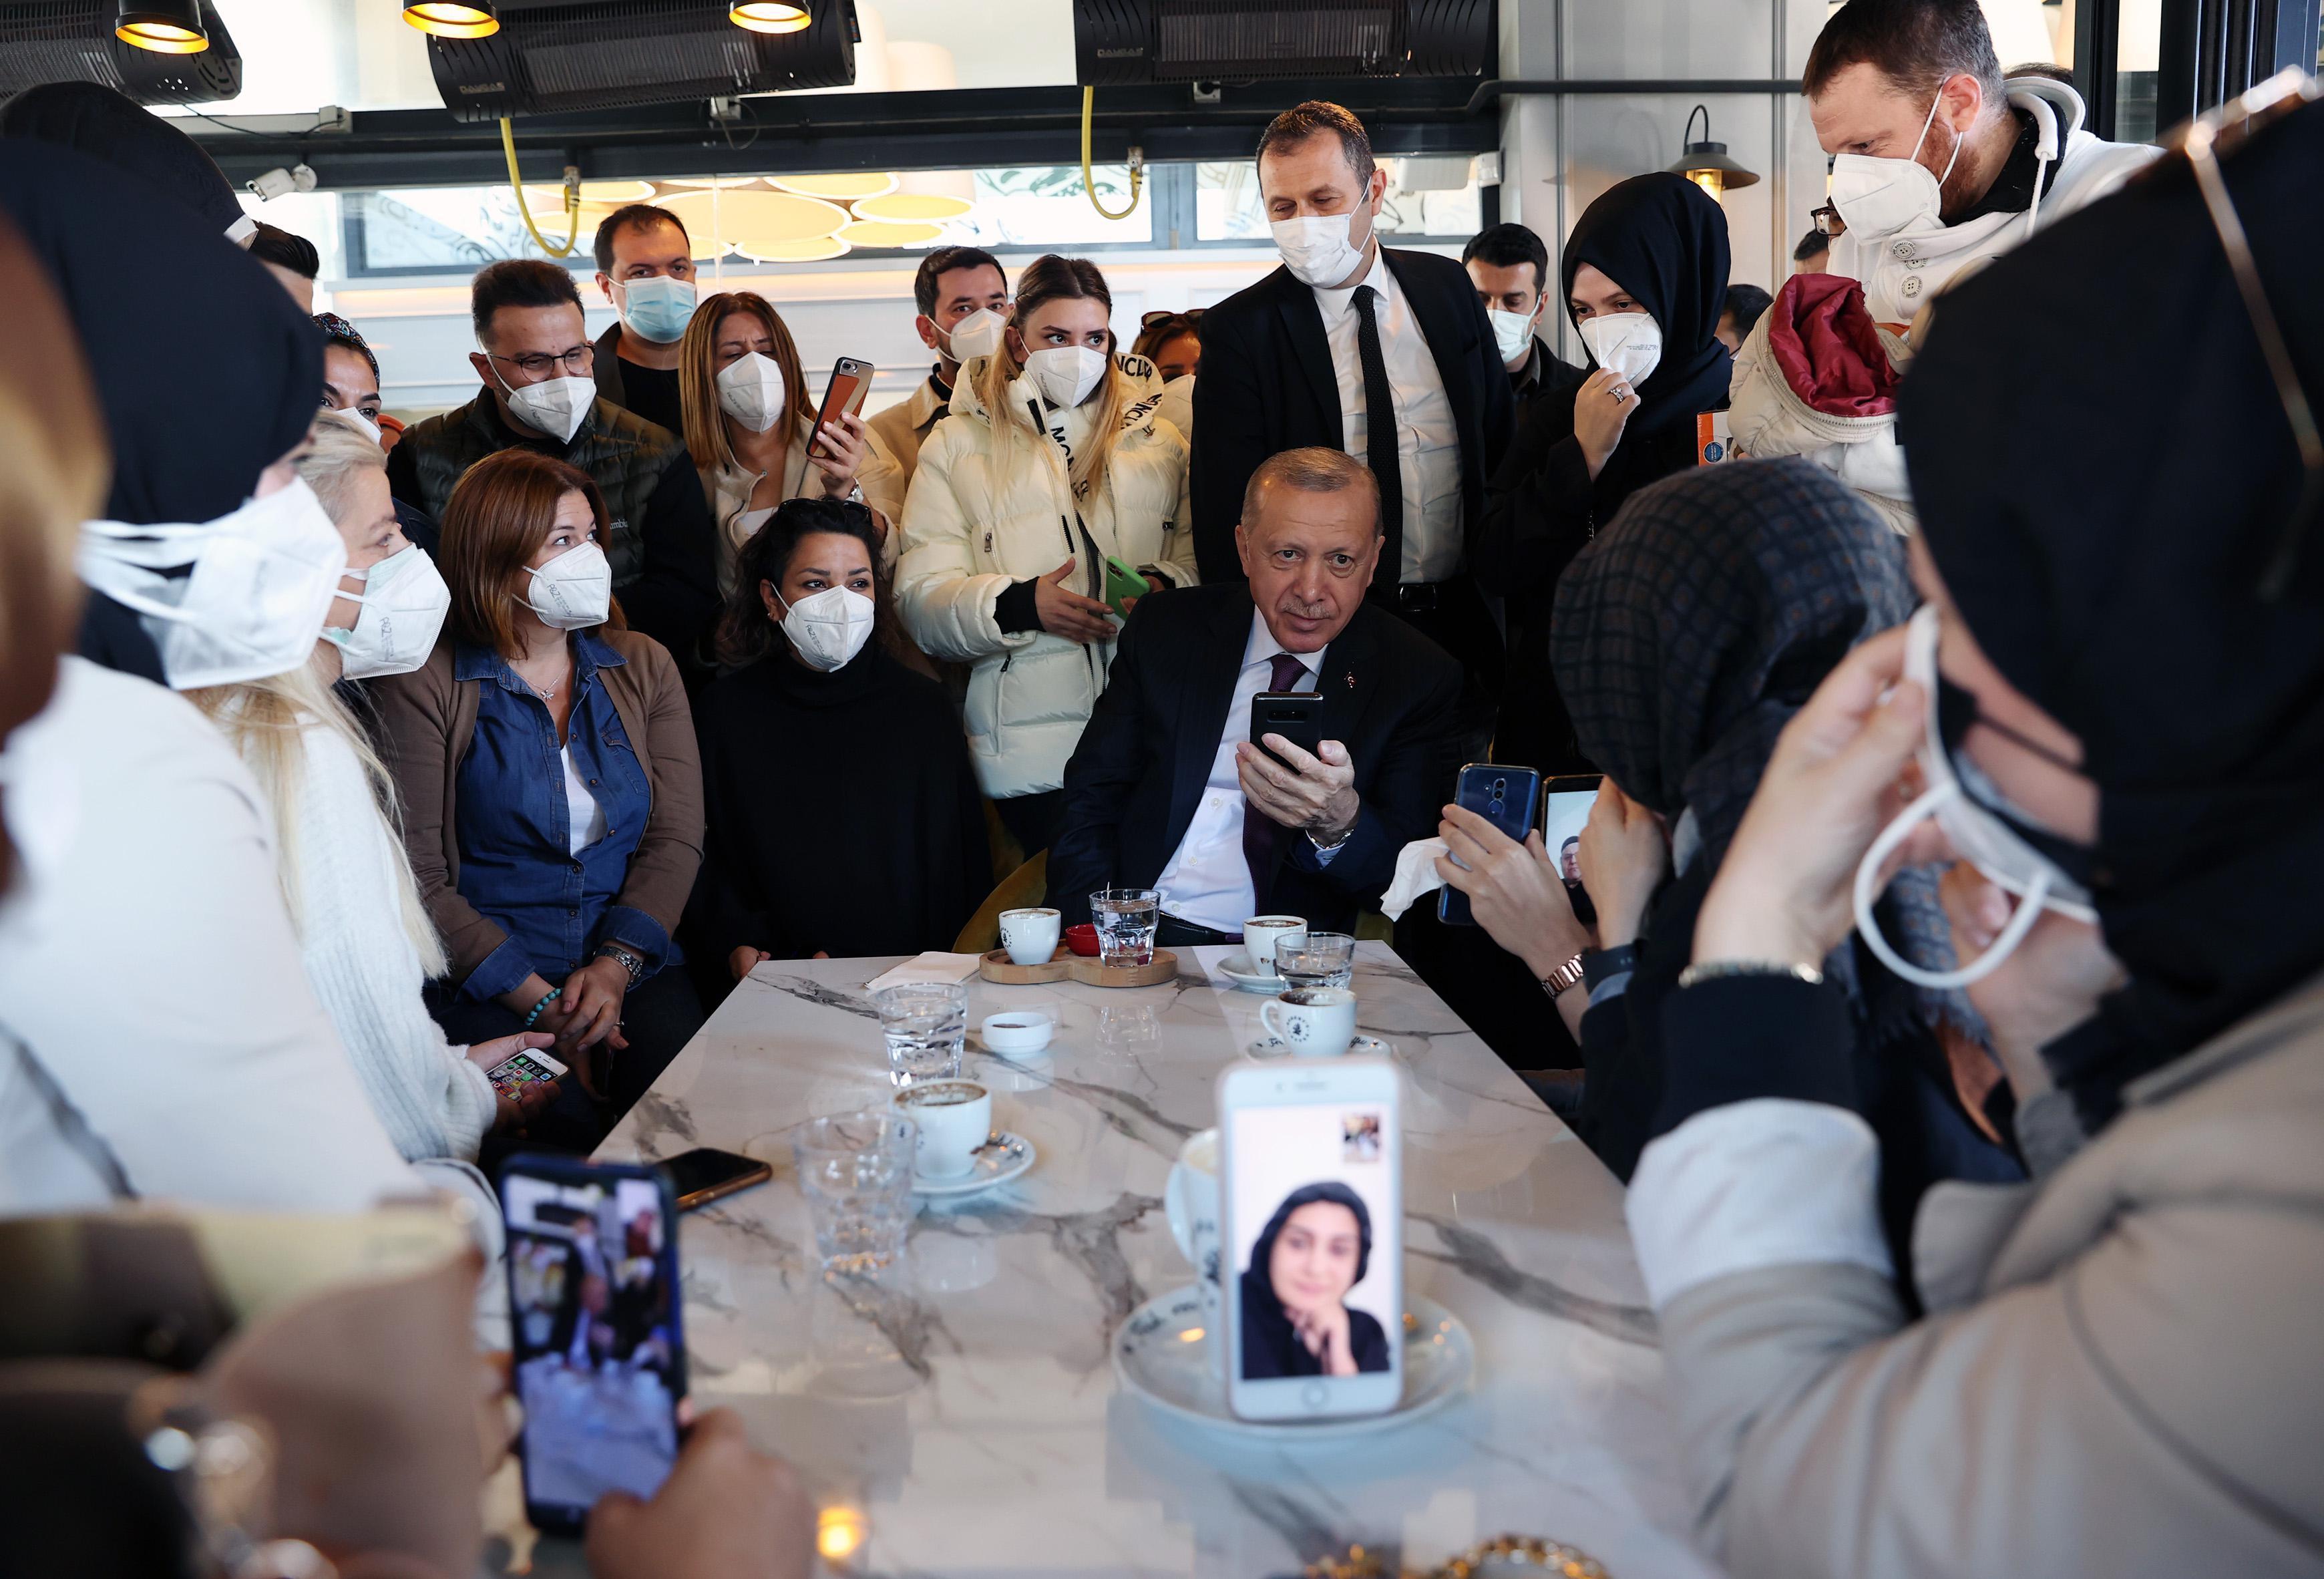 Cumhurbaşkanı Erdoğan, kafeyi ziyaret edip müşterilerle sohbet etti